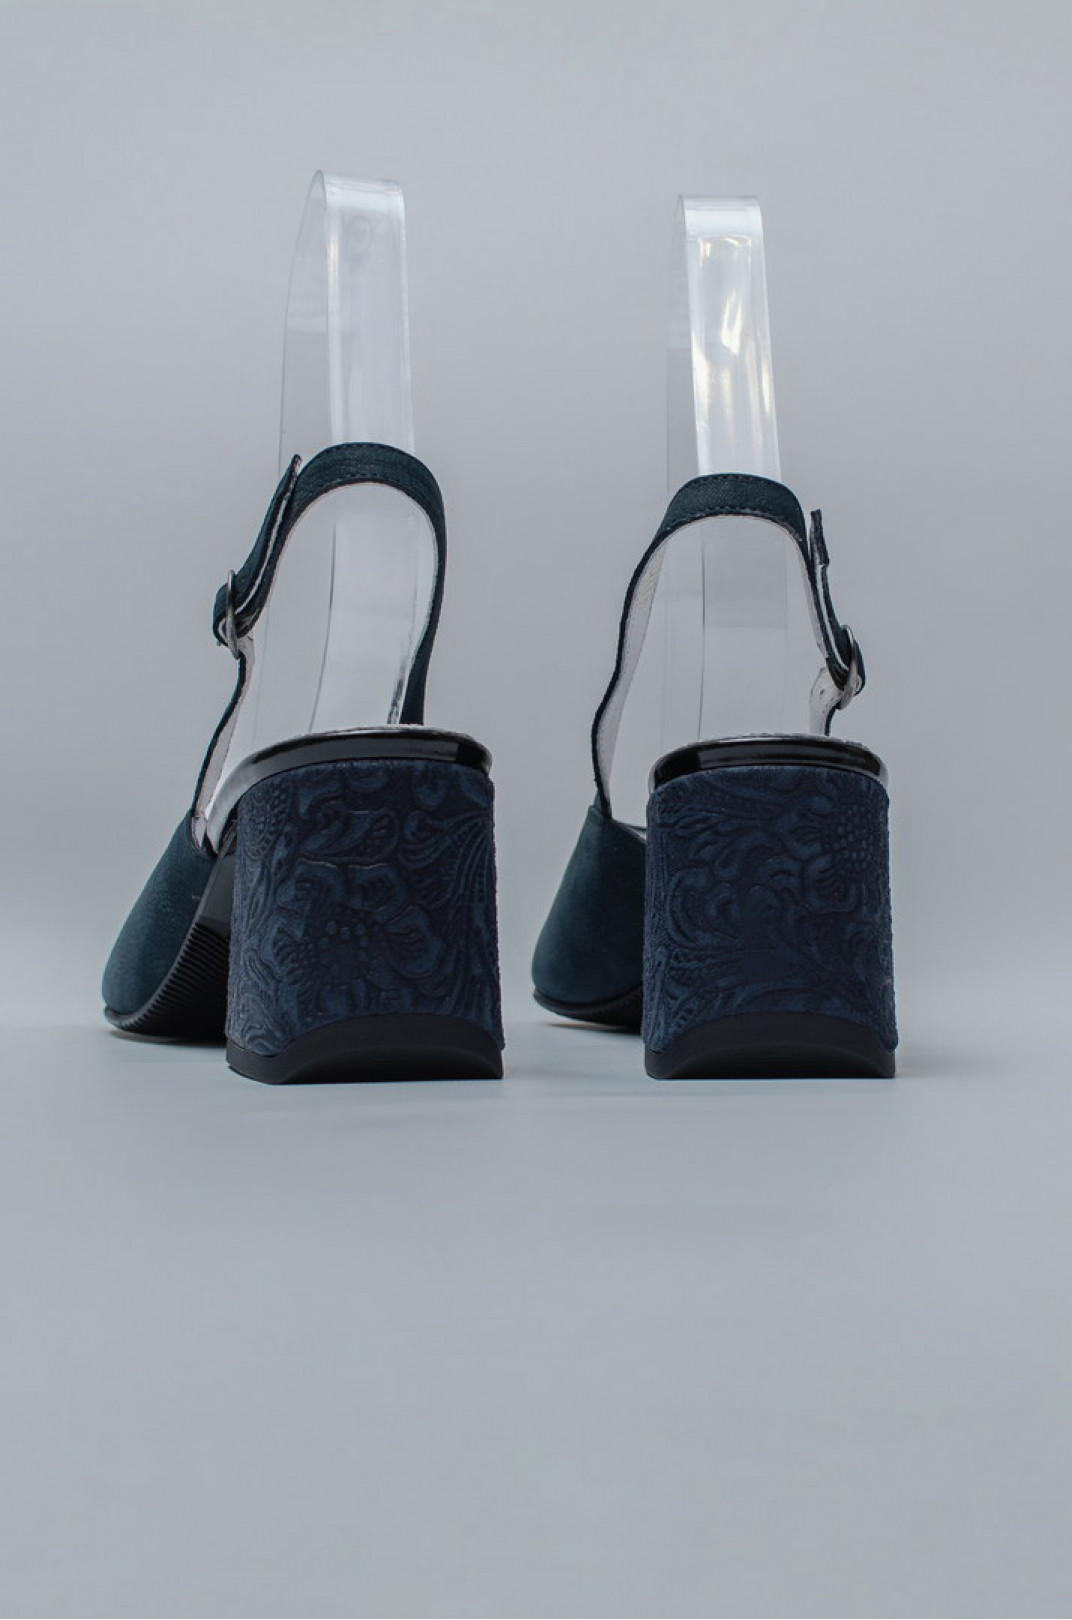 Босоножки с оригинальным дизайном каблуков больших размеров